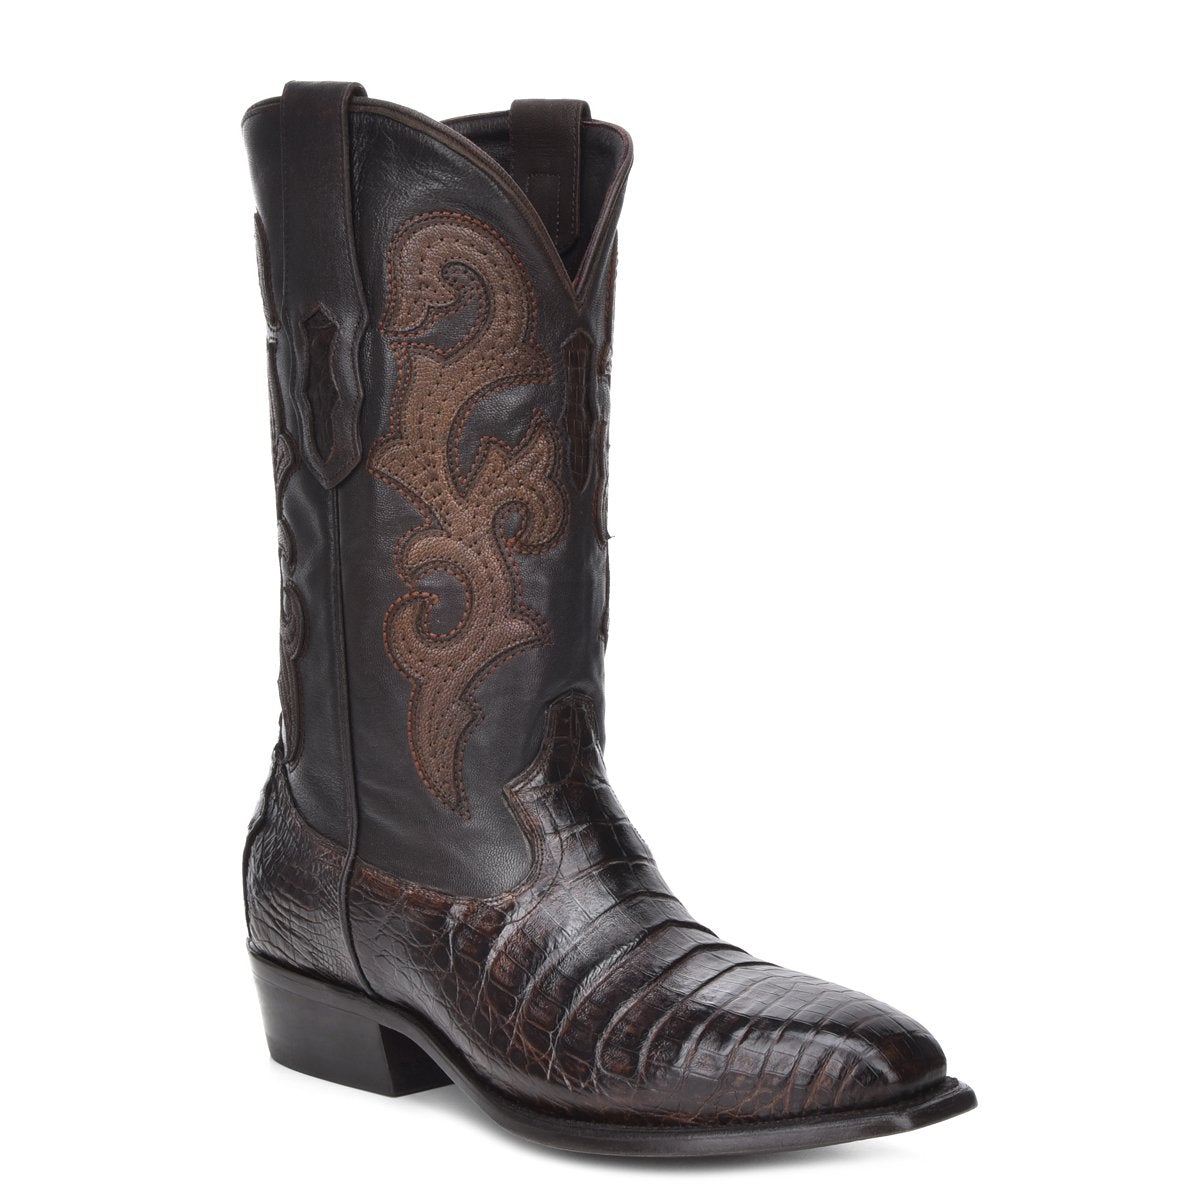 M2144 - Montana brown dress cowboy caiman boots for men-Kuet.us